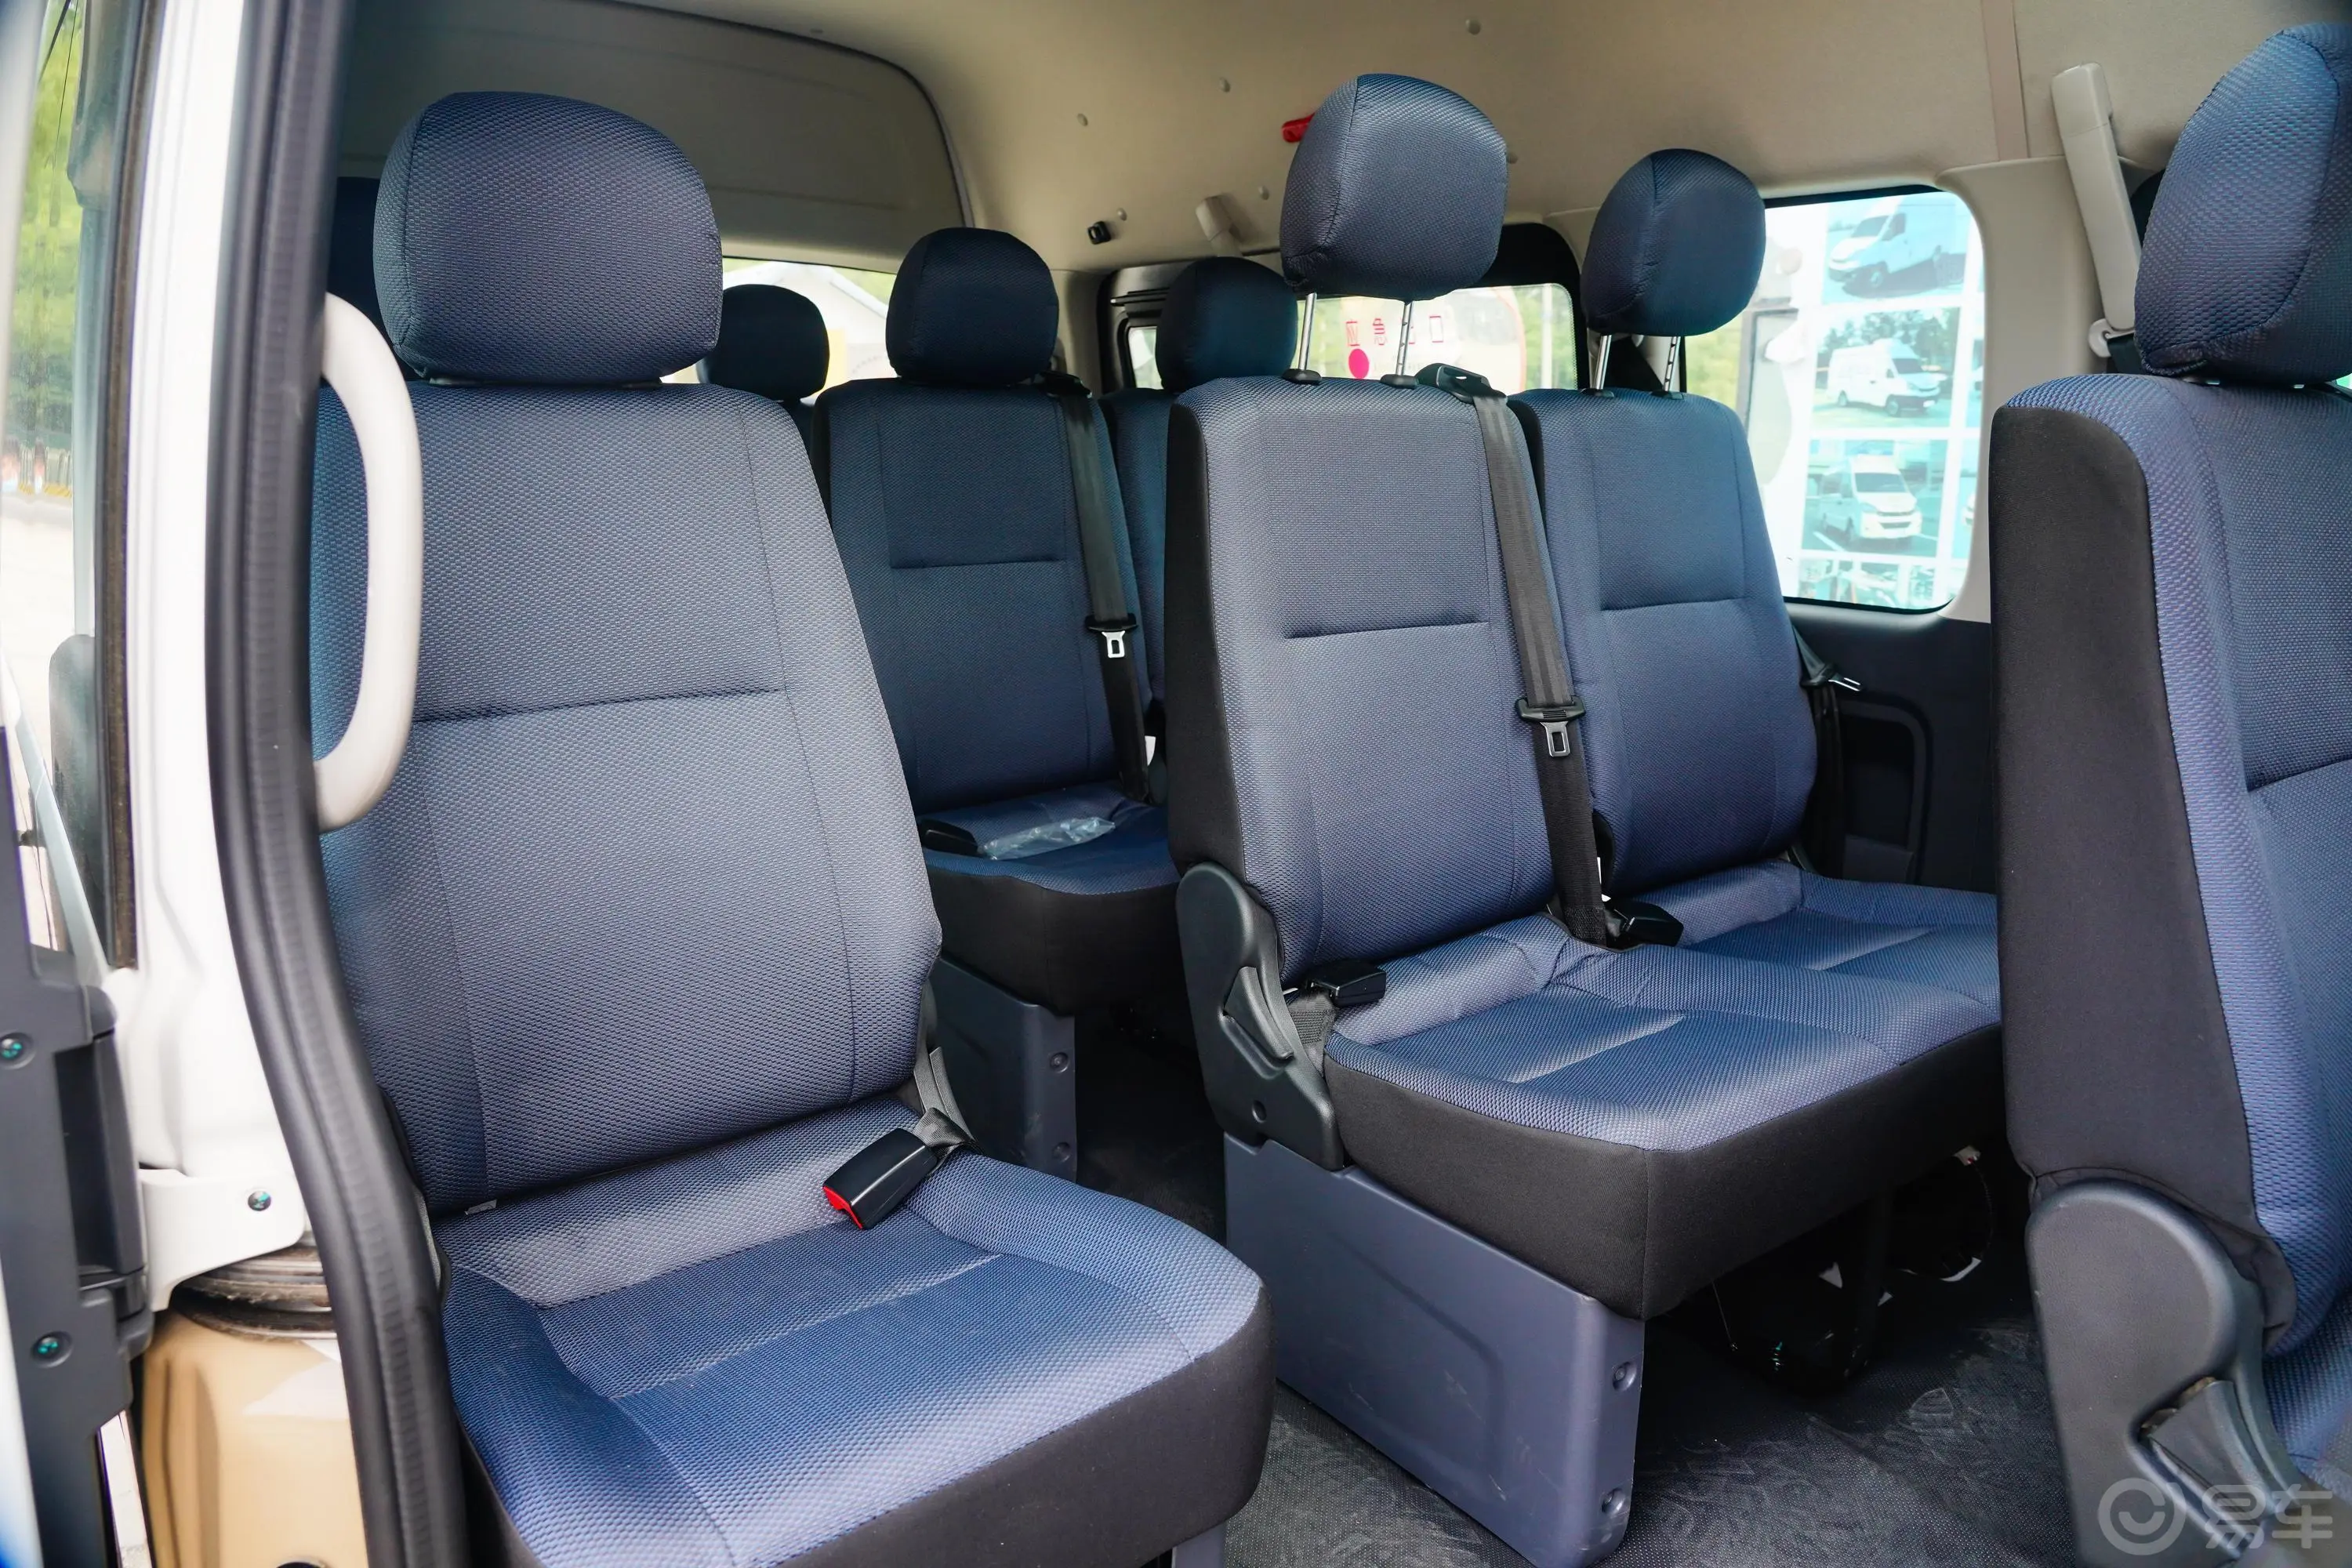 风景G9商旅版 2.4L 长轴高顶客车 10-14座第三排座椅